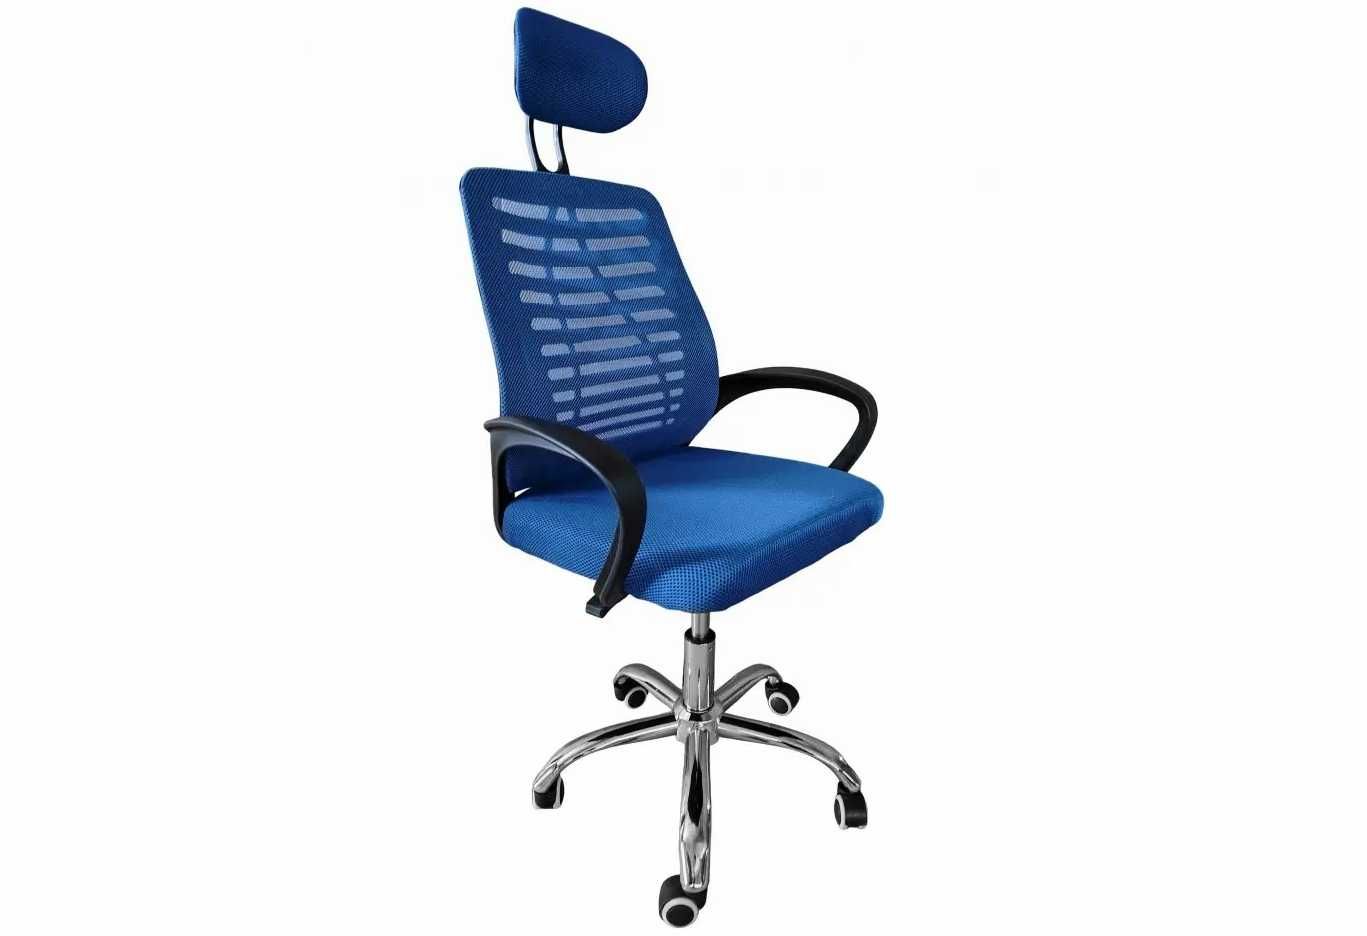 Кресло для компьютера офиса синее Boston стул на колесах офисный